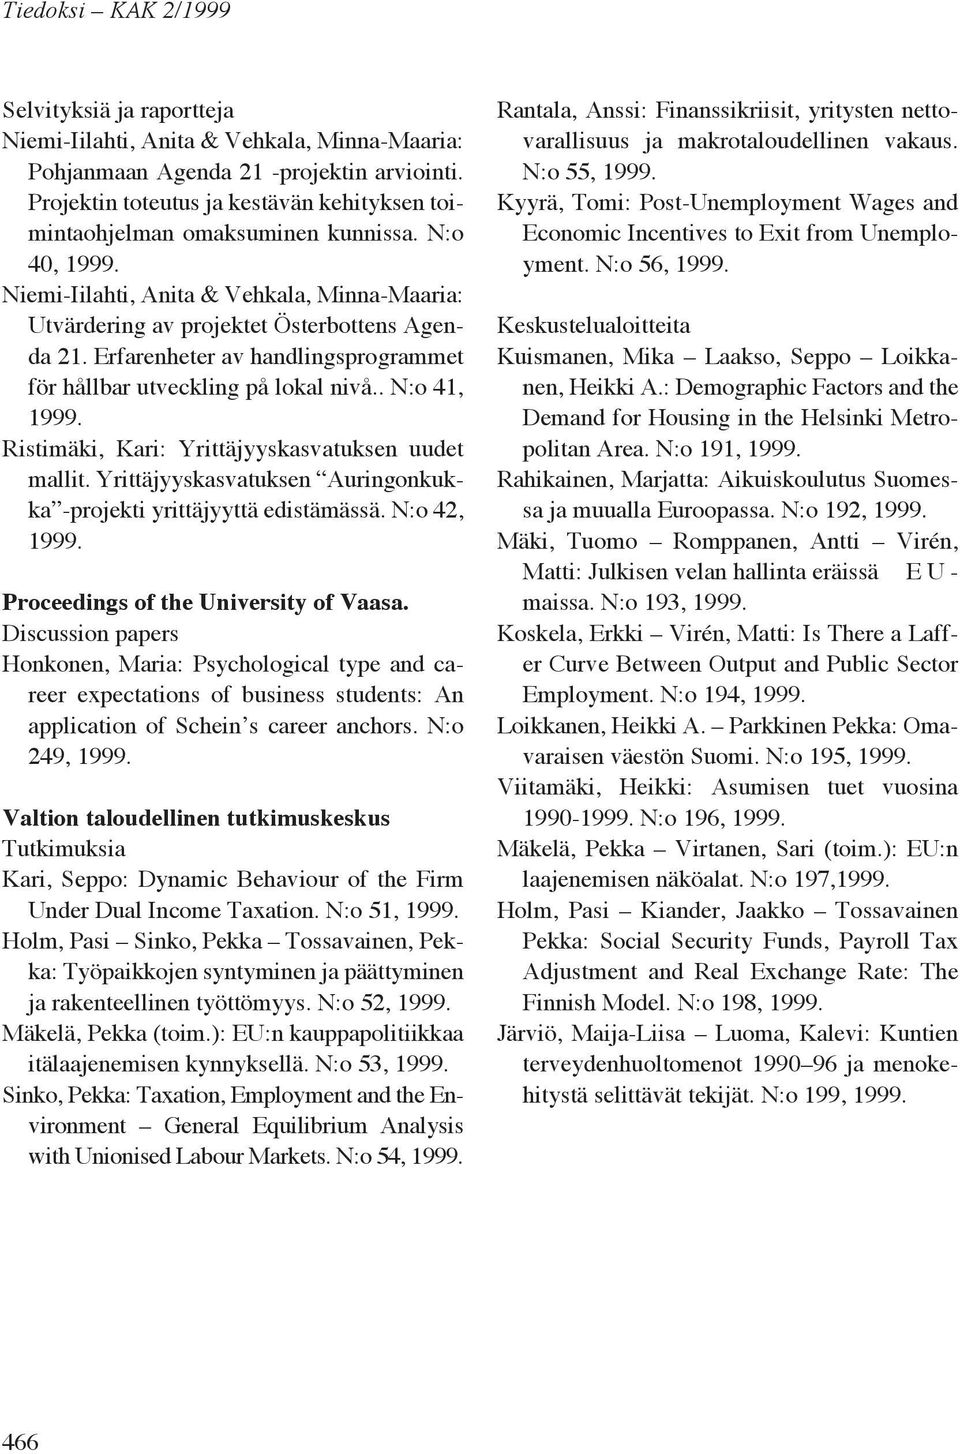 . N:o 41, Ristimäki, Kari: Yrittäjyyskasvatuksen uudet mallit. Yrittäjyyskasvatuksen Auringonkukka -projekti yrittäjyyttä edistämässä. N:o 42, Proceedings of the University of Vaasa.